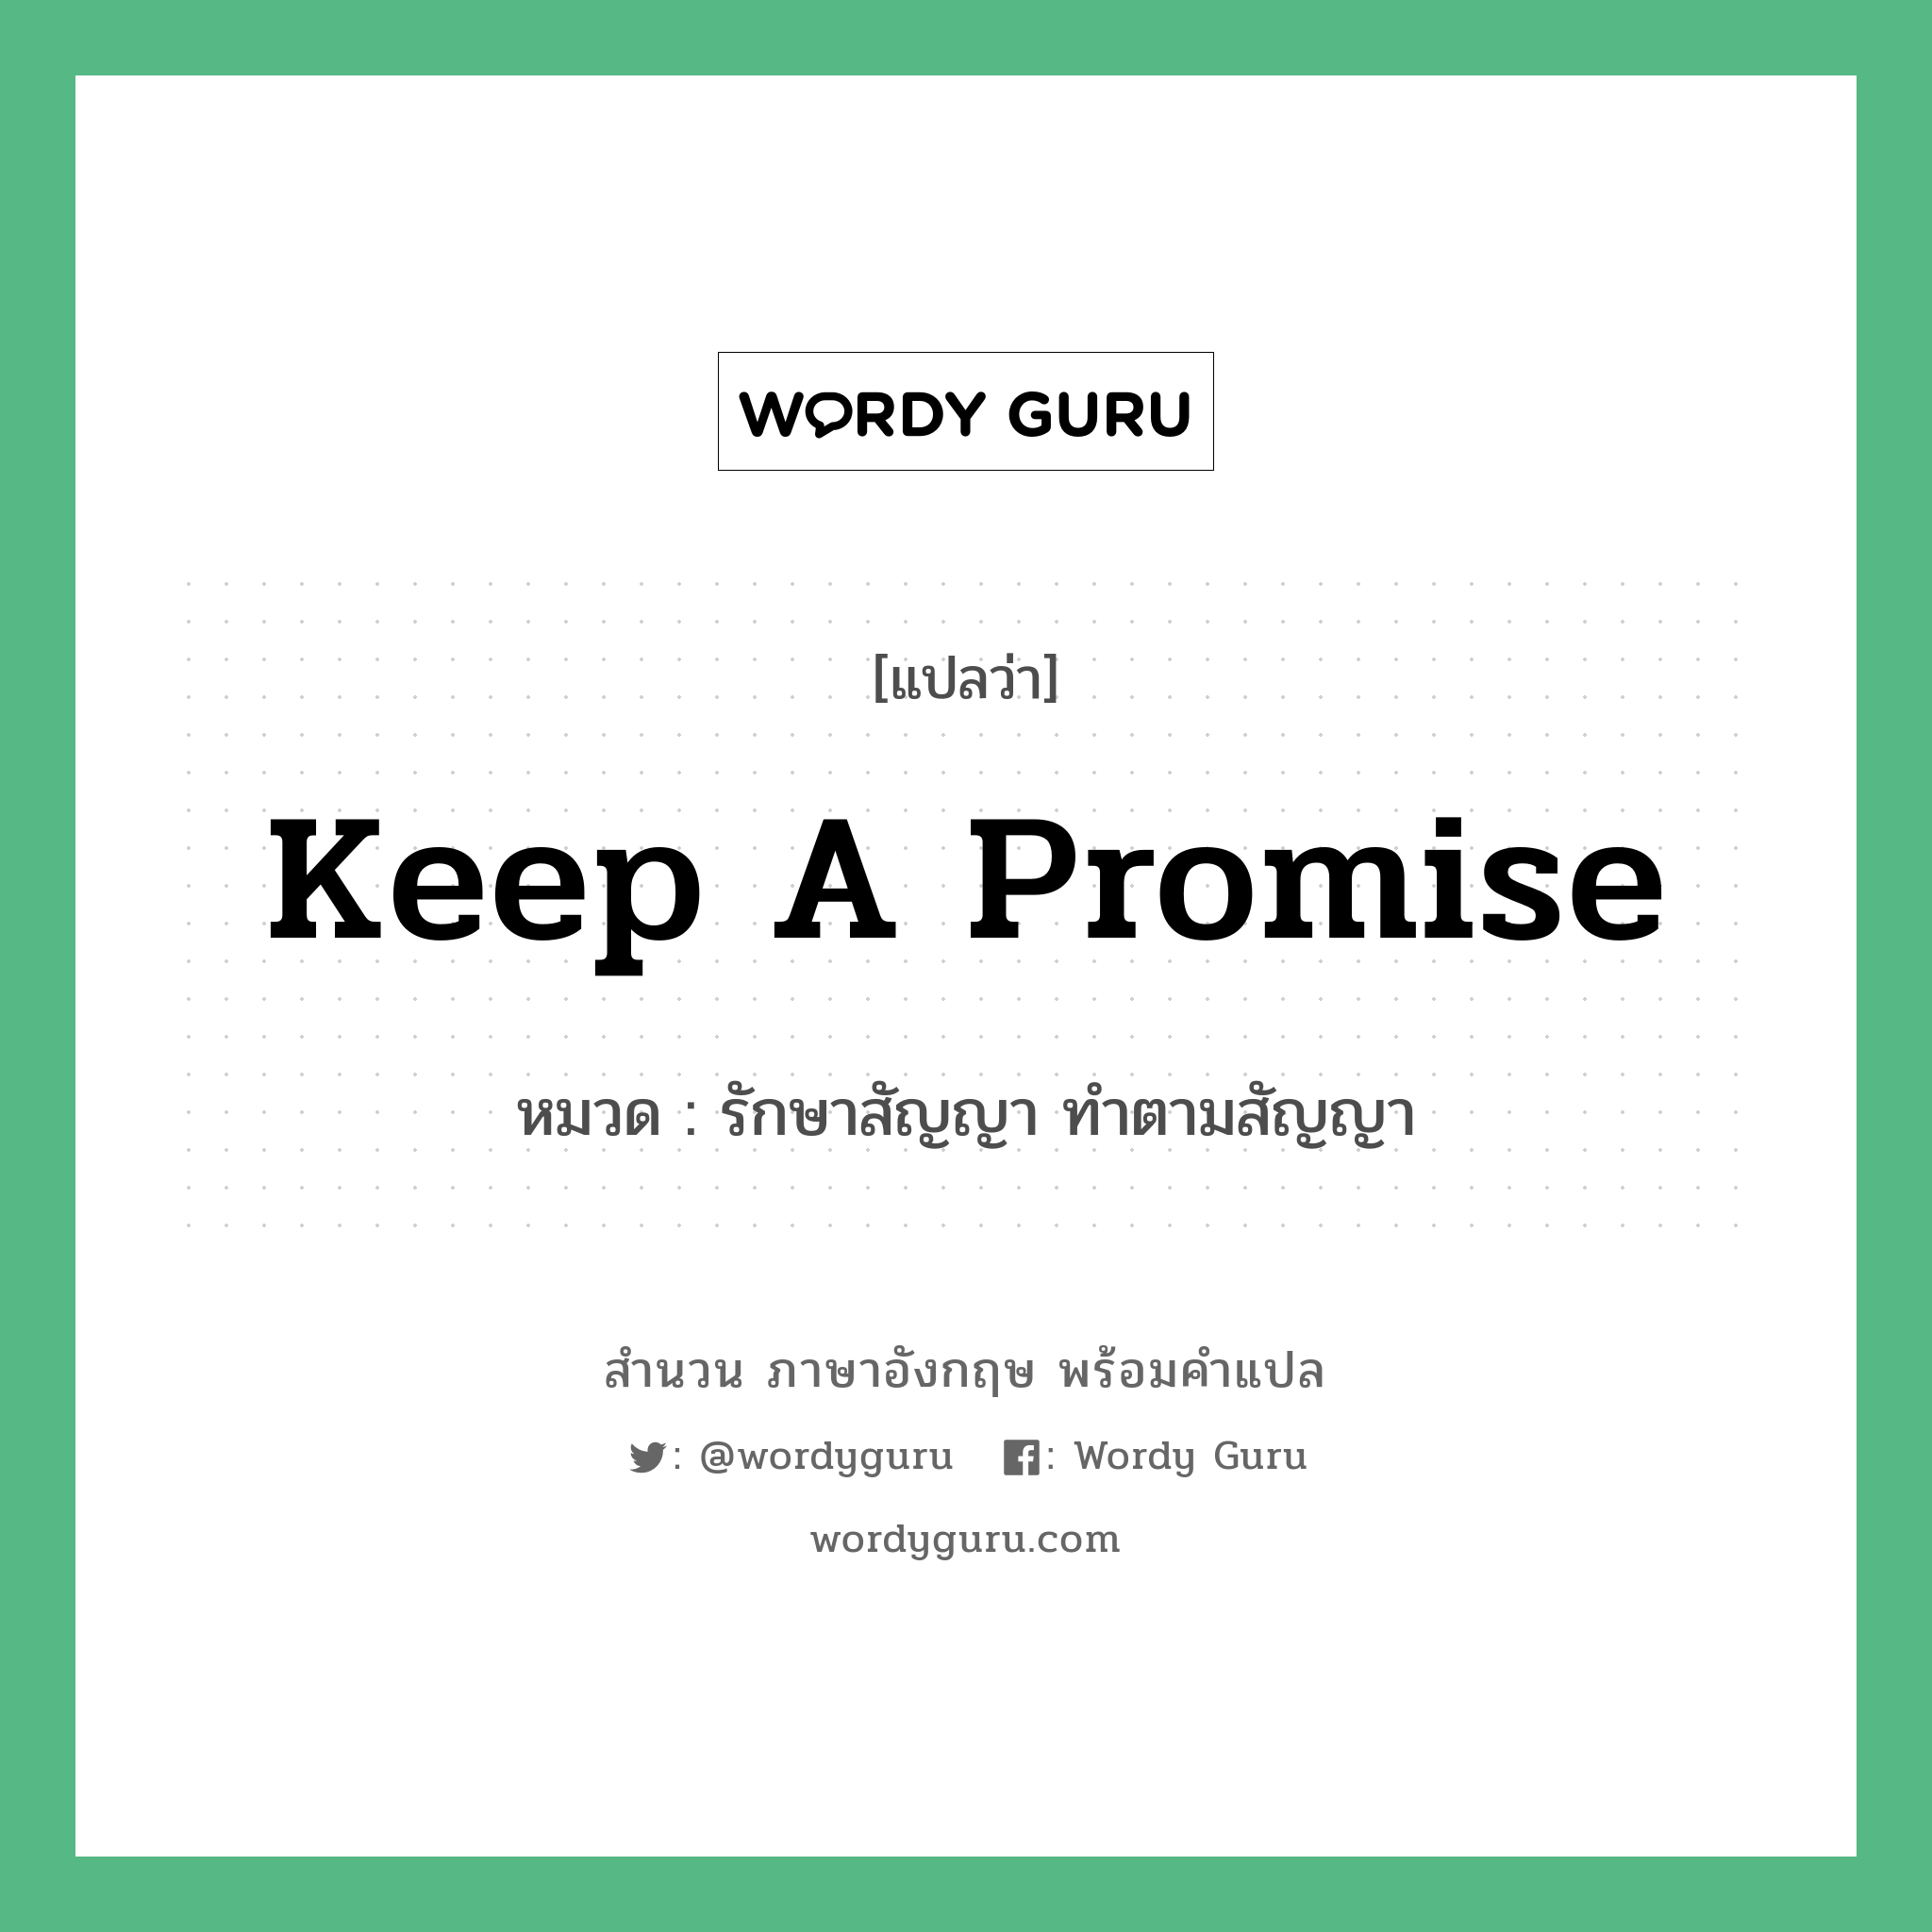 รักษาสัญญา ทำตามสัญญา ภาษาอังกฤษ?, สำนวนภาษาอังกฤษ รักษาสัญญา ทำตามสัญญา แปลว่า รักษาสัญญา ทำตามสัญญา หมวด Keep a promise